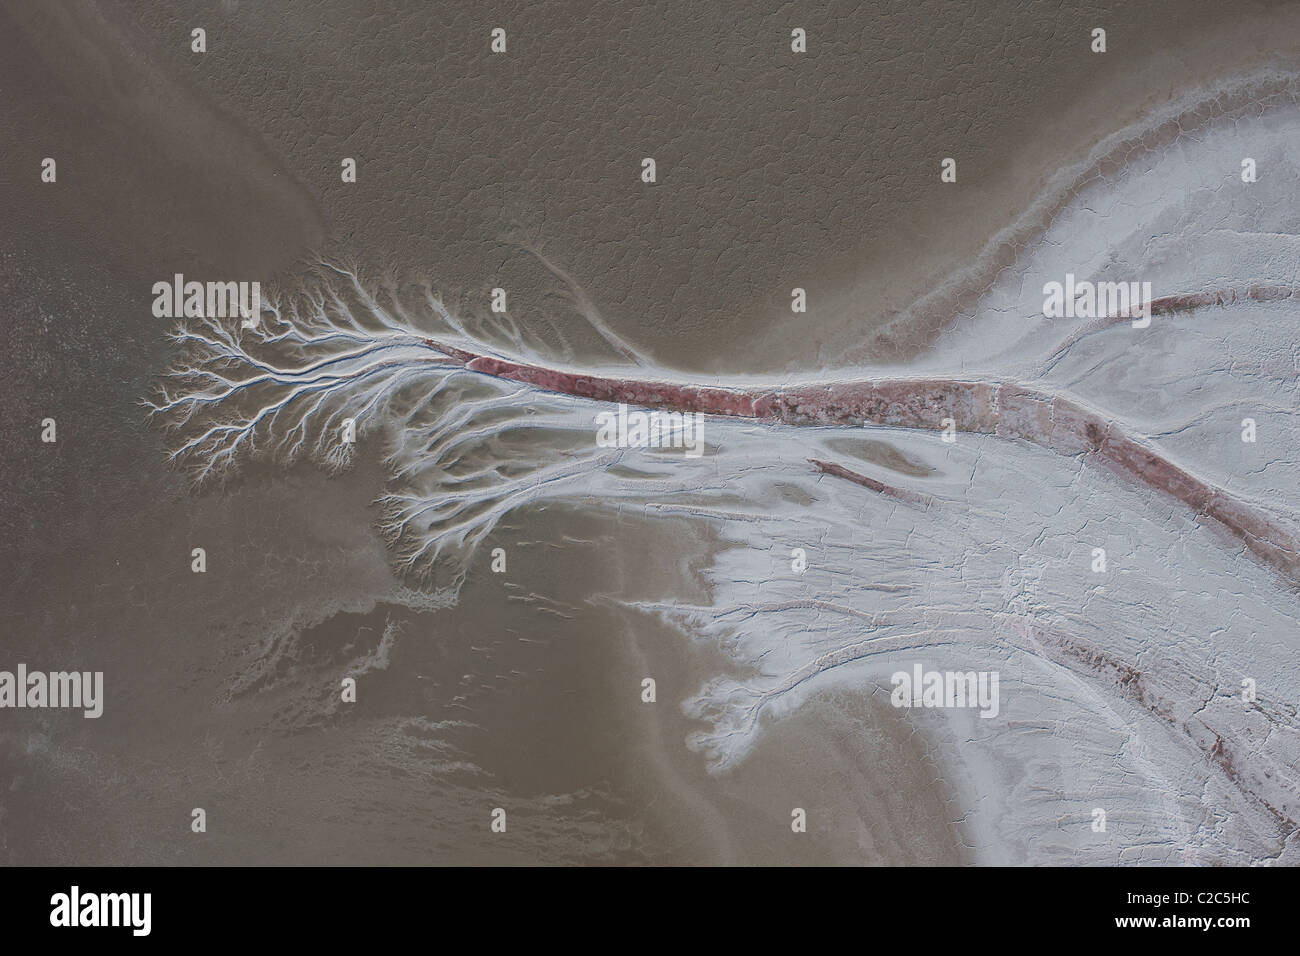 VERTIKALE LUFTAUFNAHME. Dendritisches Muster aufgrund von Wassererosion auf der Oberfläche des Searles Dry Lake. Trona, San Bernardino County, Kalifornien, USA. Stockfoto